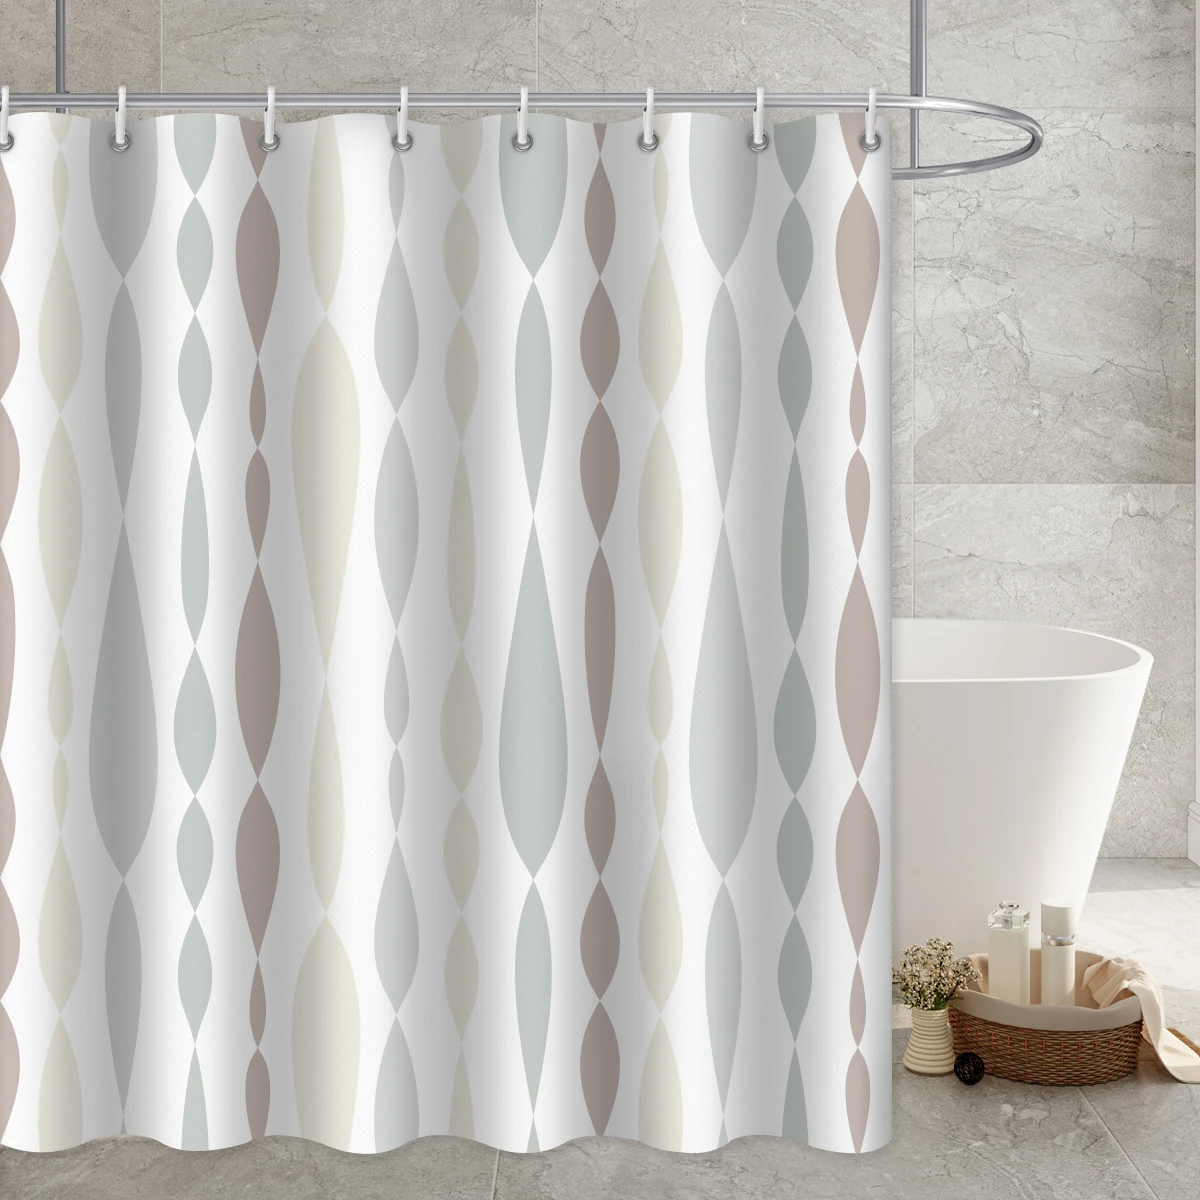 Basics-cortina de ducha larga Simple, forro de tela impermeable para baño, cama, baño y más, Riel de cortina con ganchos